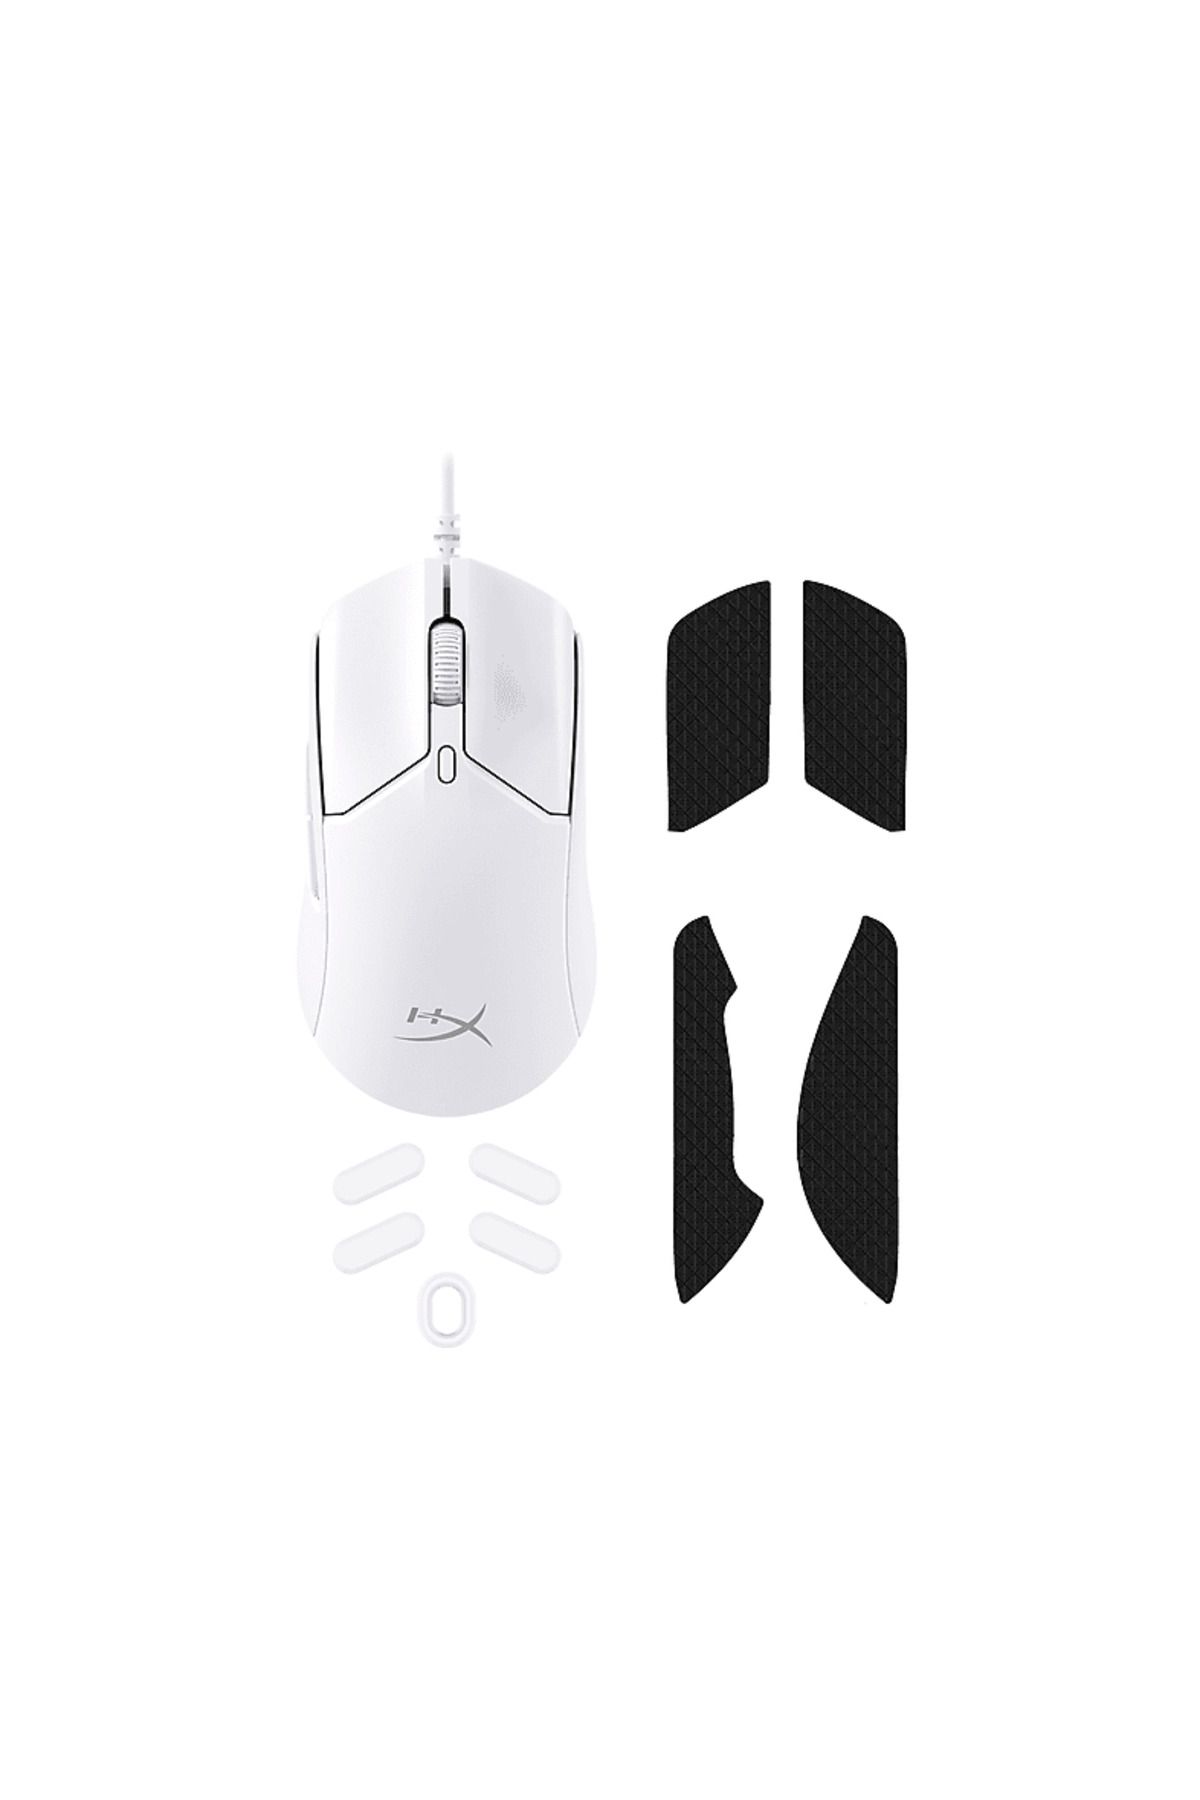 HyperX Pulsefire Haste 2 Kablolu Mouse Beyaz